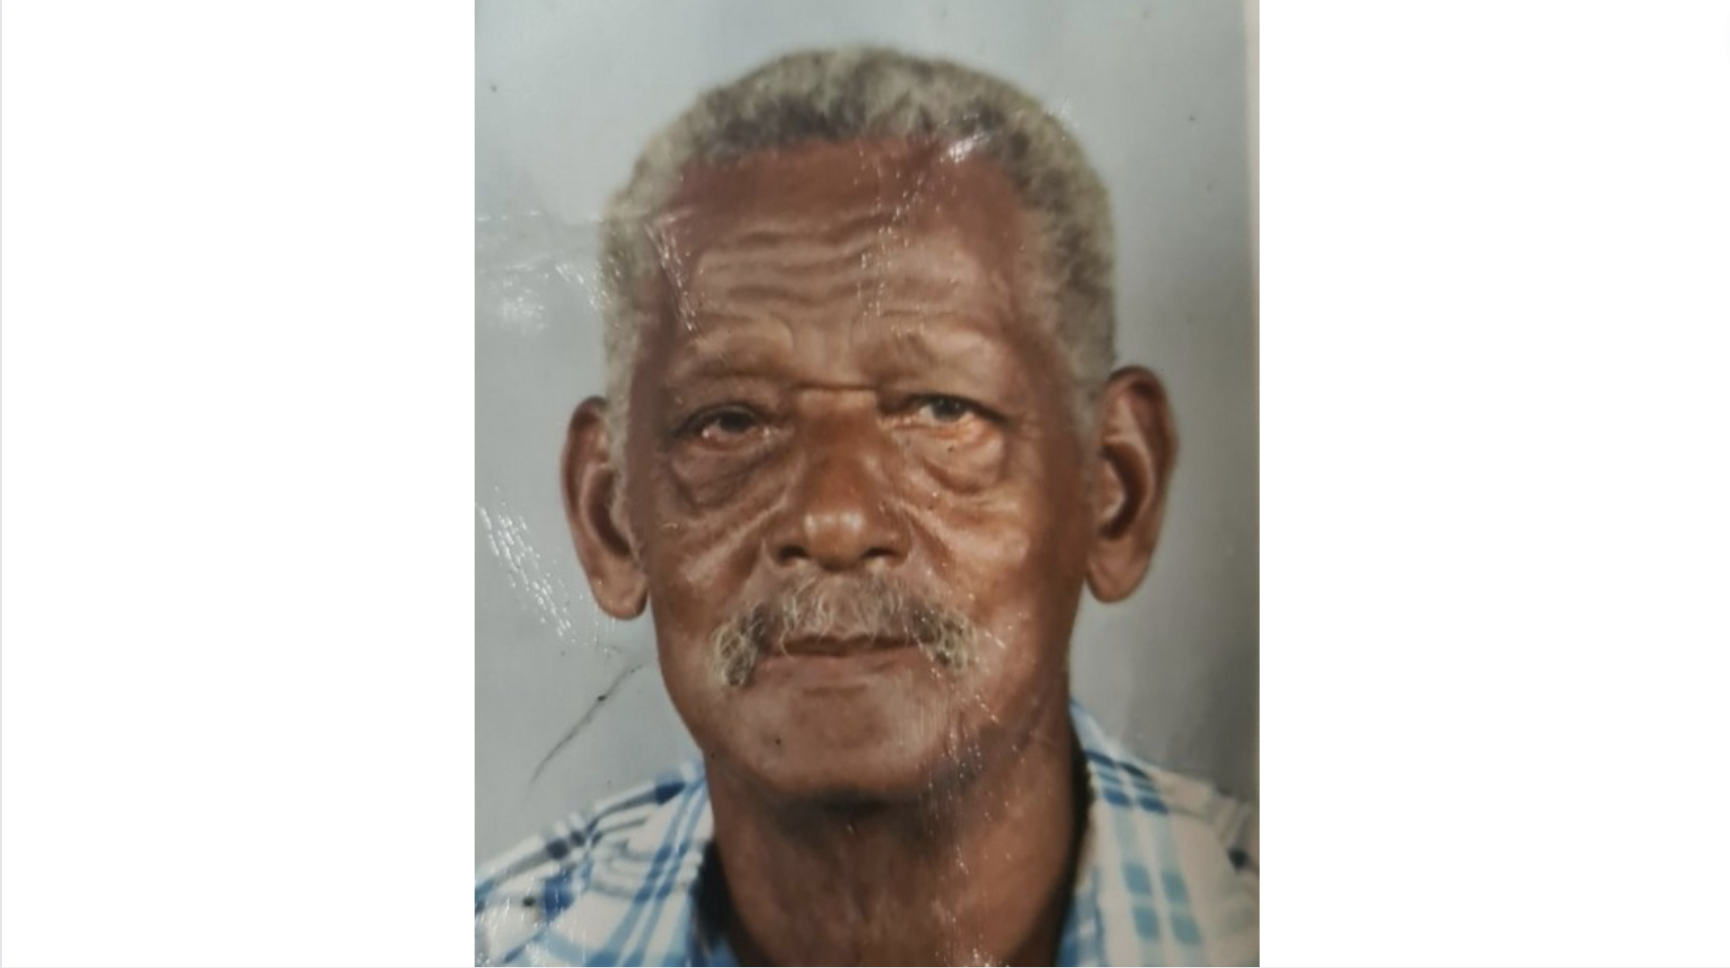     Appel à témoins : un Péléen de 83 ans porté disparu 

